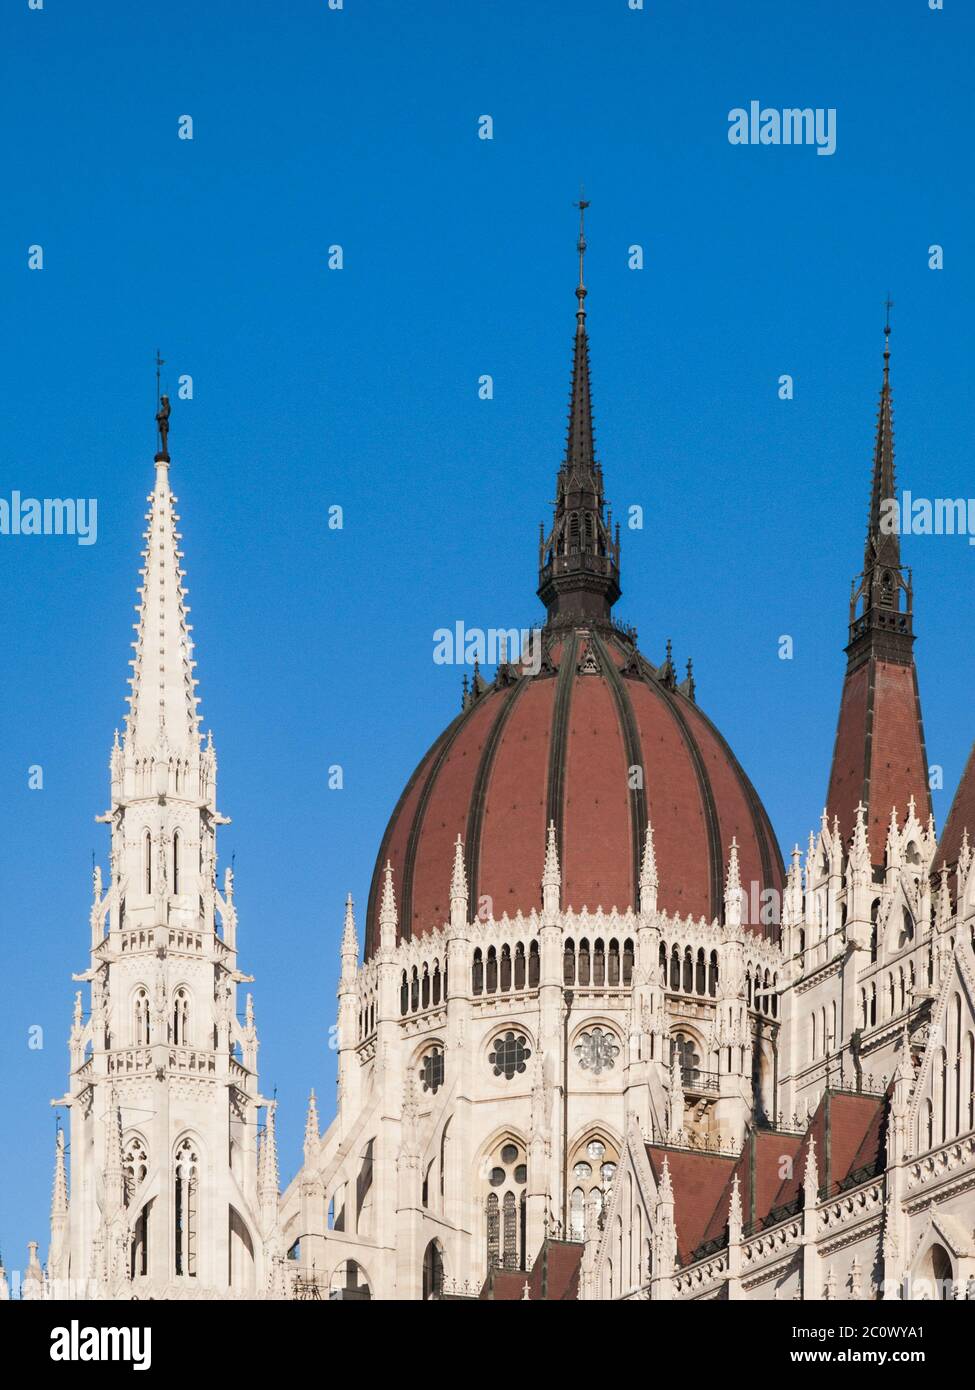 Detailansicht des historischen Gebäudes des ungarischen Parlaments, aka Orszaghaz, mit typischer zentraler Kuppel auf klarem blauen Himmel Hintergrund. Budapest, Ungarn, Europa. Es ist ein bemerkenswertes Wahrzeichen und Sitz der Nationalversammlung von Ungarn. UNESCO-Weltkulturerbe. Stockfoto